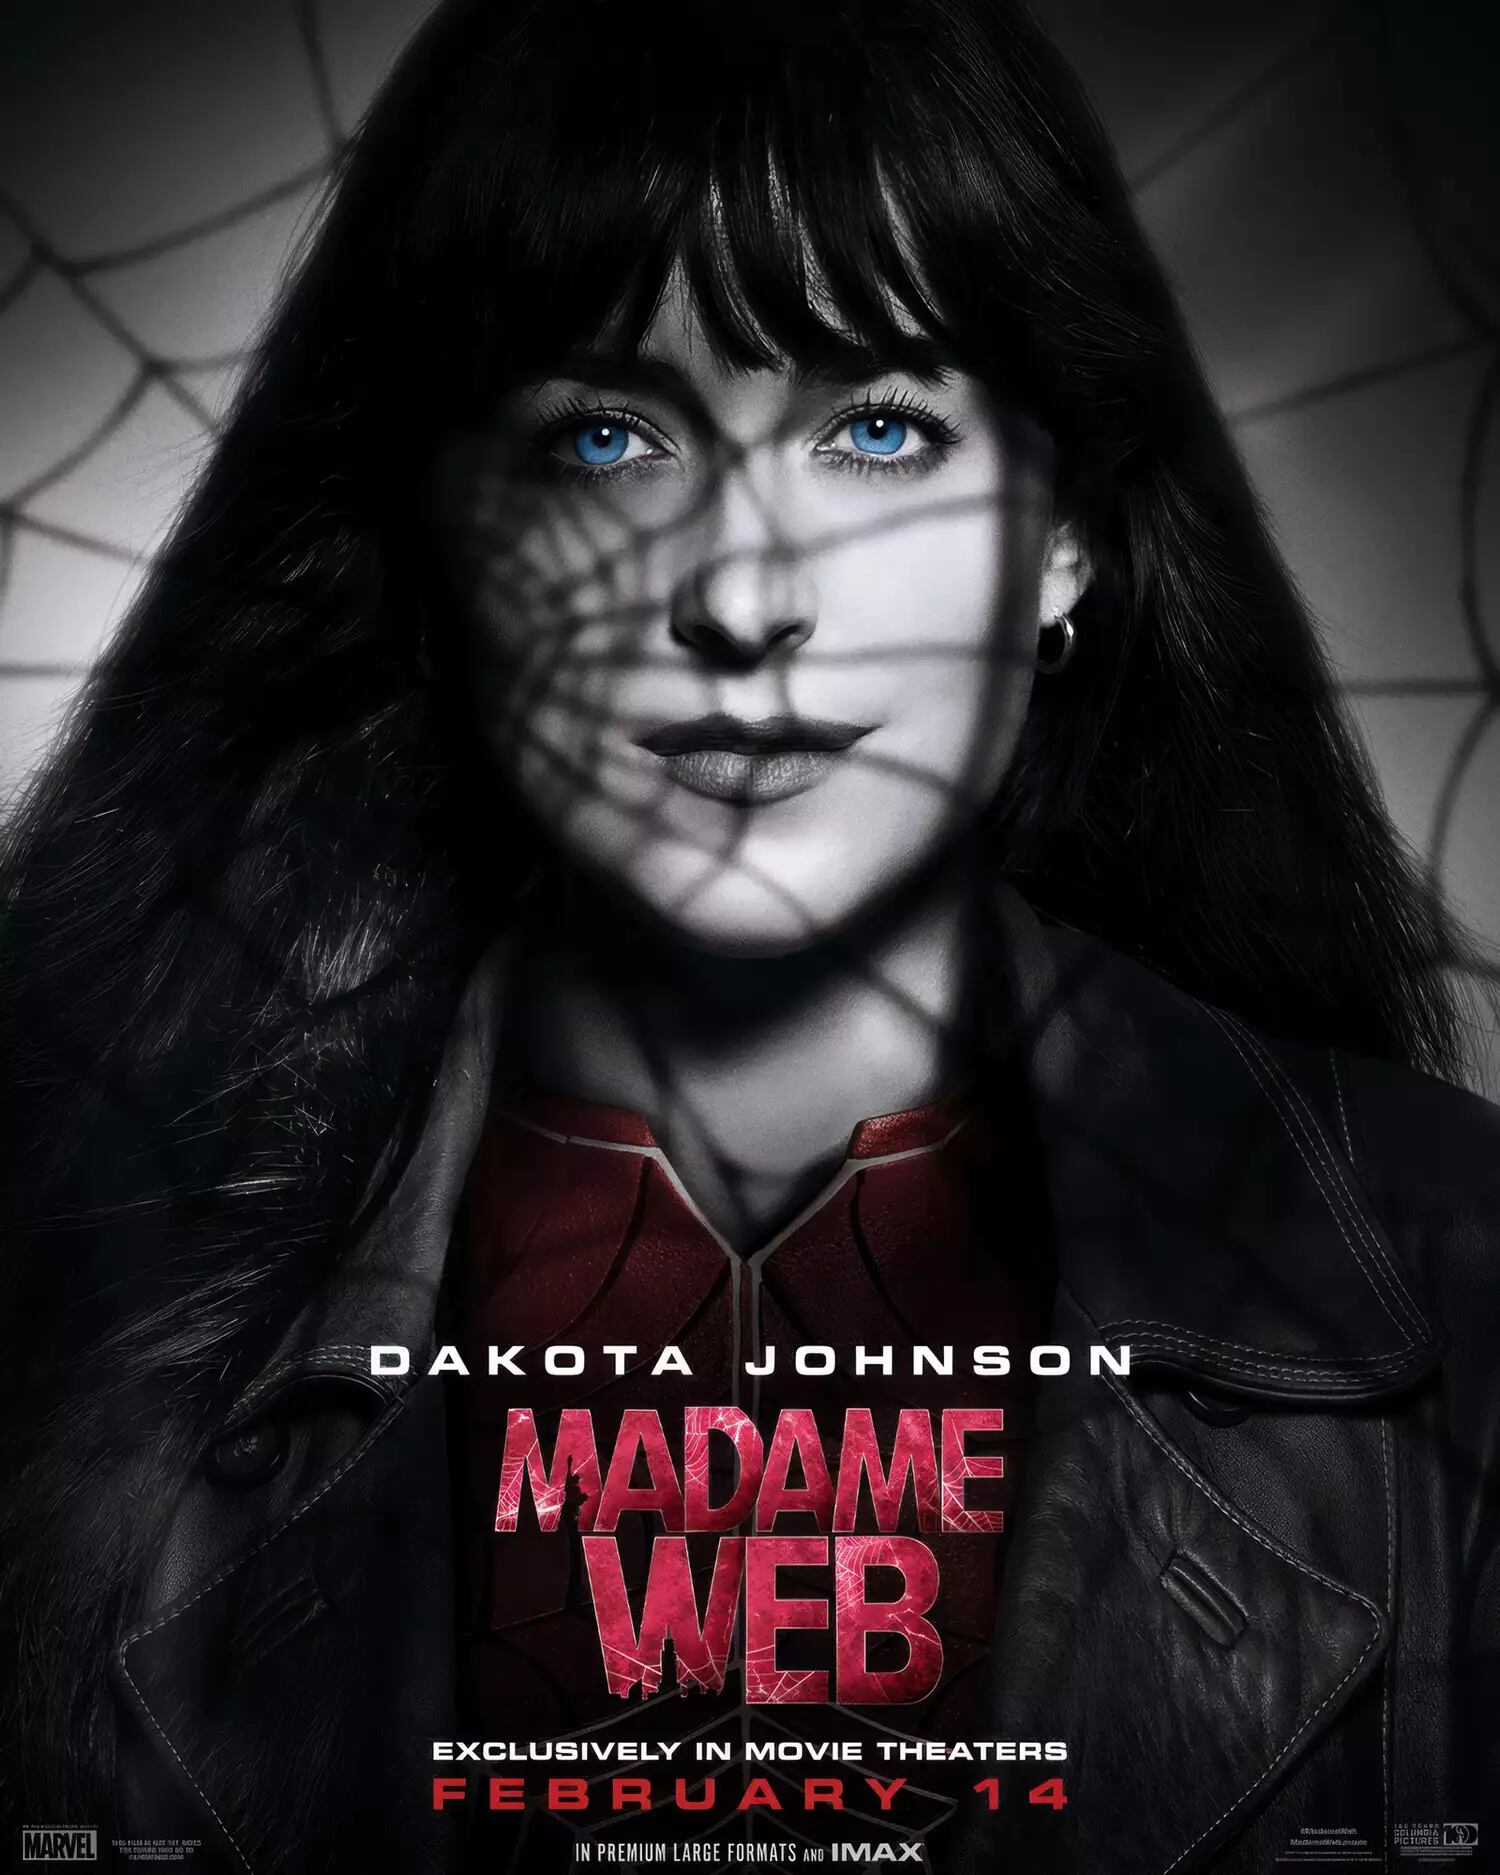 La película en la que Dakota Johnson interpreta un papel ya está disponible en cines, luego de su estreno el 14 de febrero.